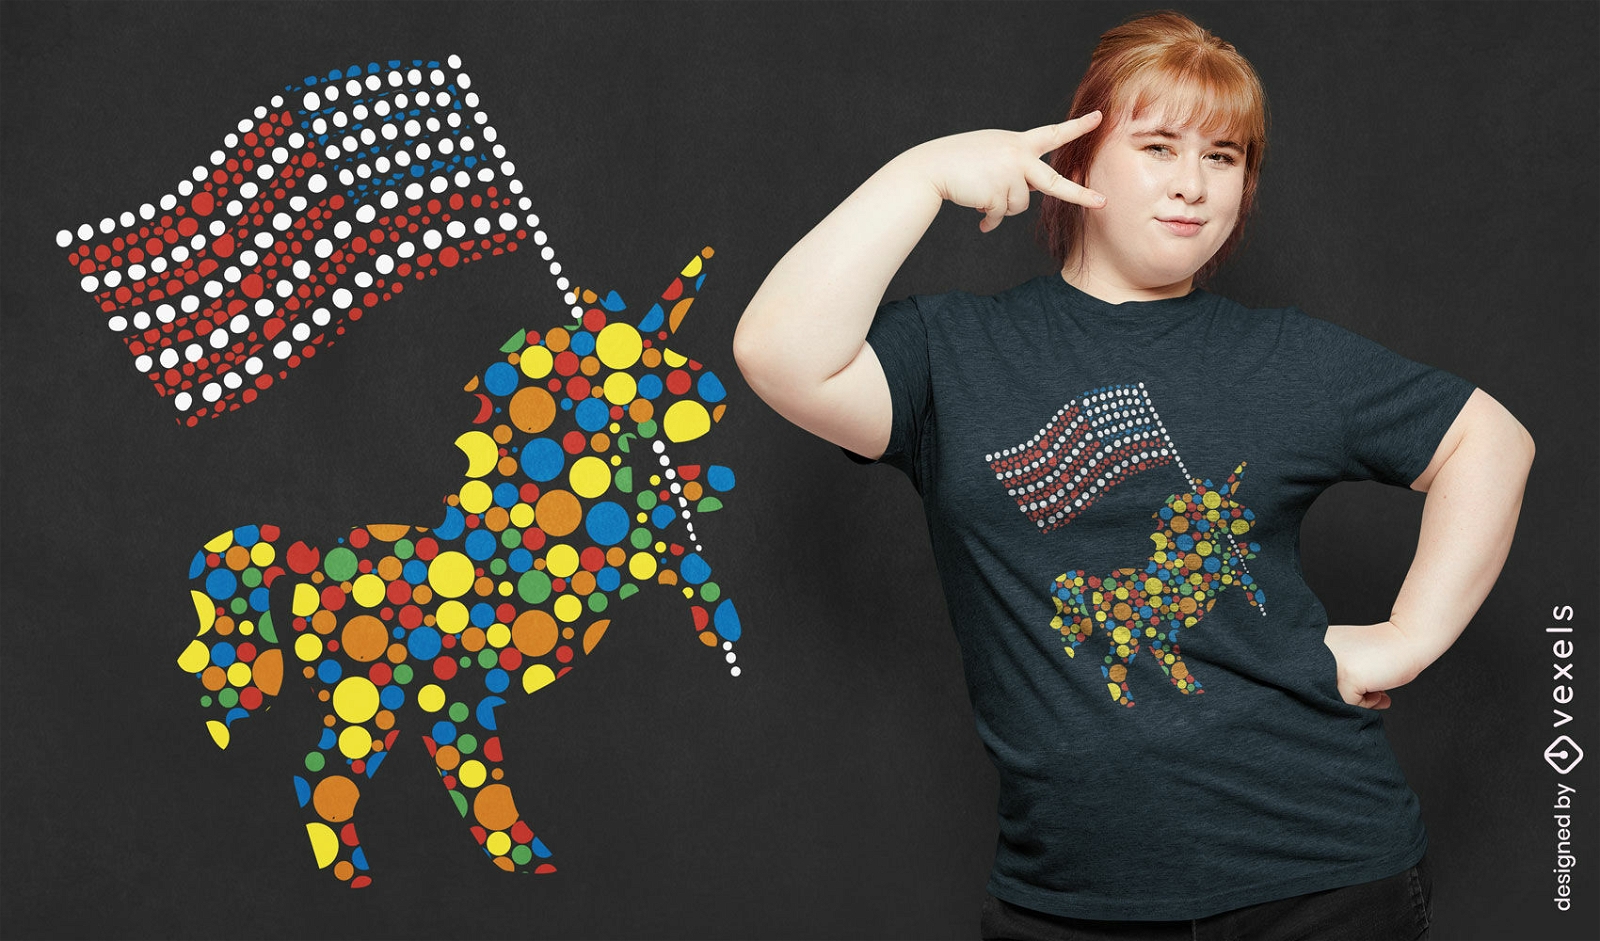 Colorful polka dot unicorn USA flag t-shirt design